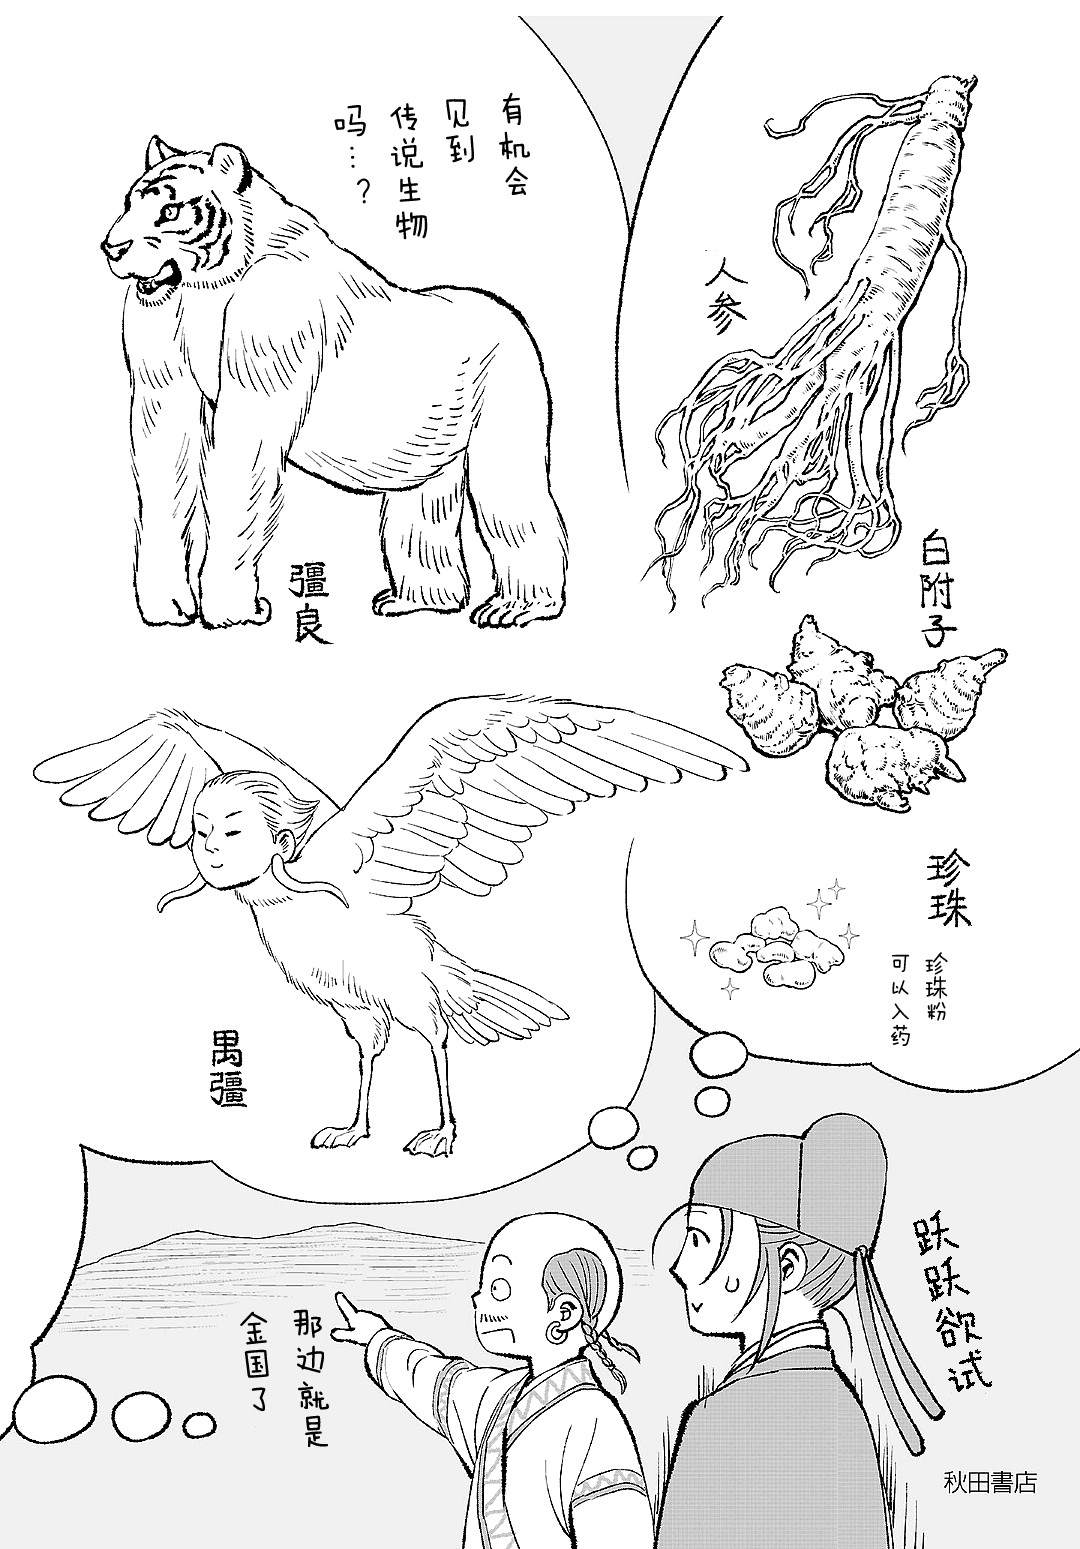 天上恋歌~金之公主与火之药师~漫画,第六卷后记7图